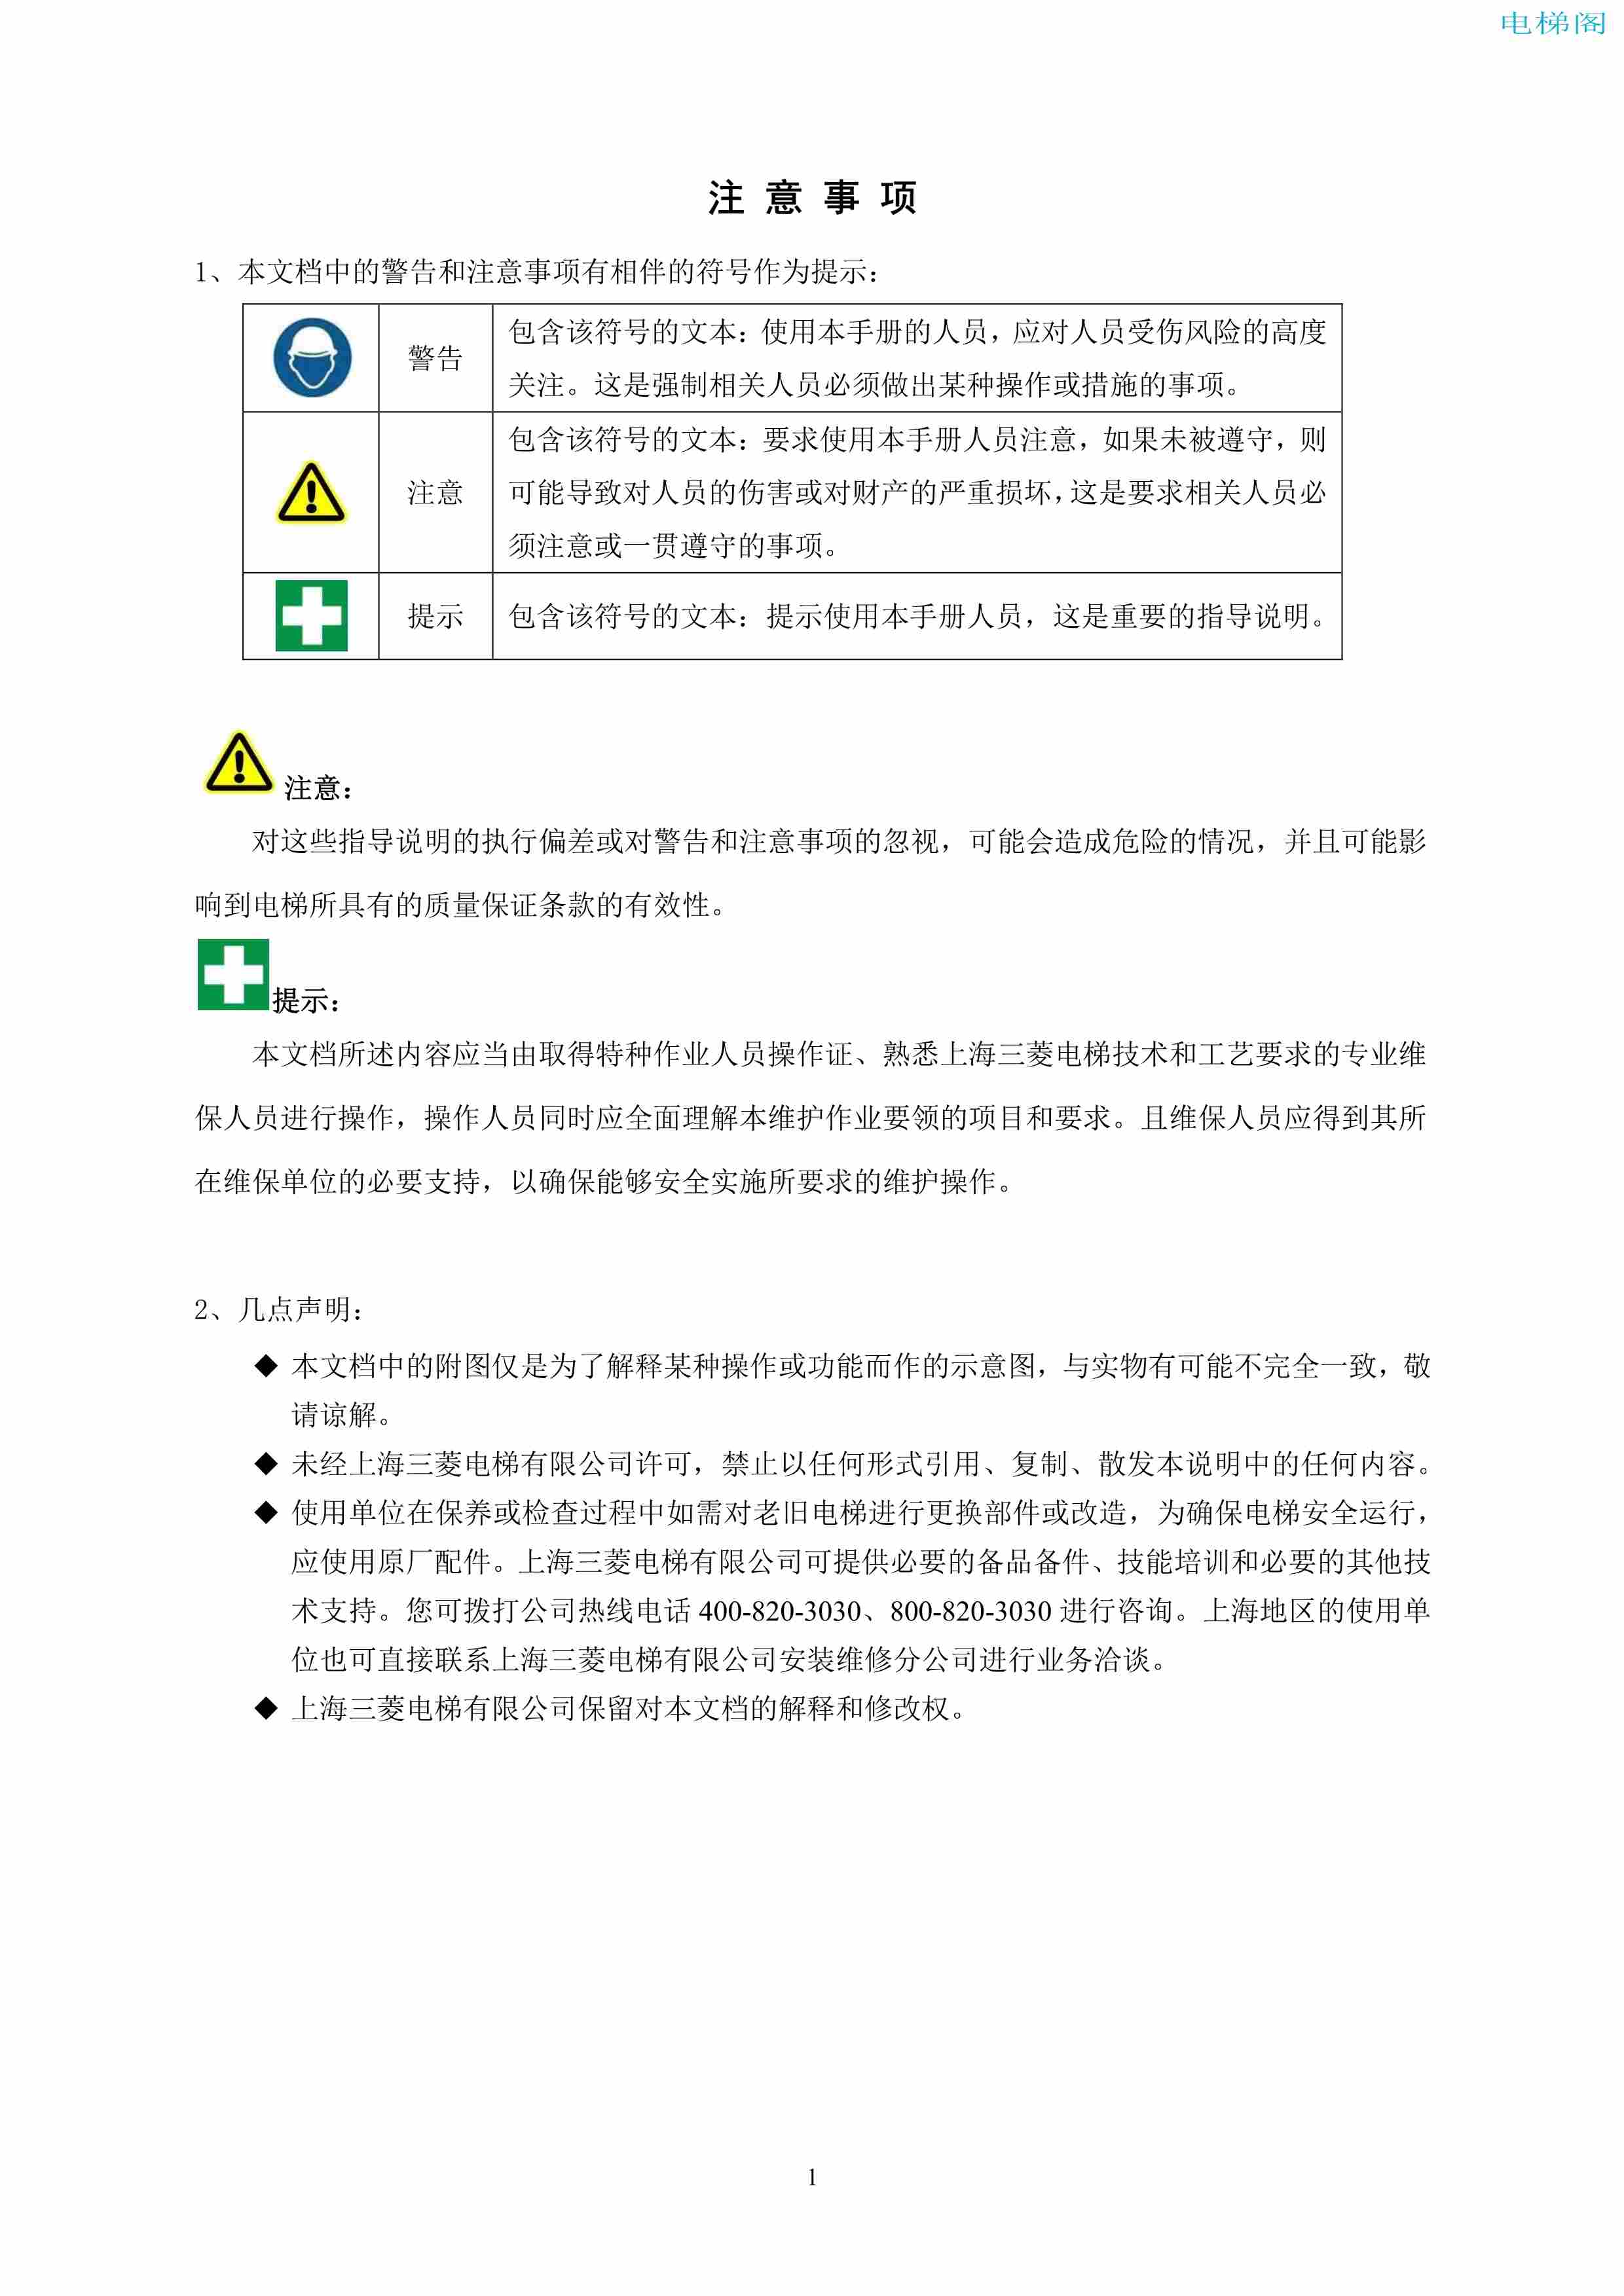 上海三菱电梯有限公司自动扶梯制动器维护作业要领汇编_2.jpg